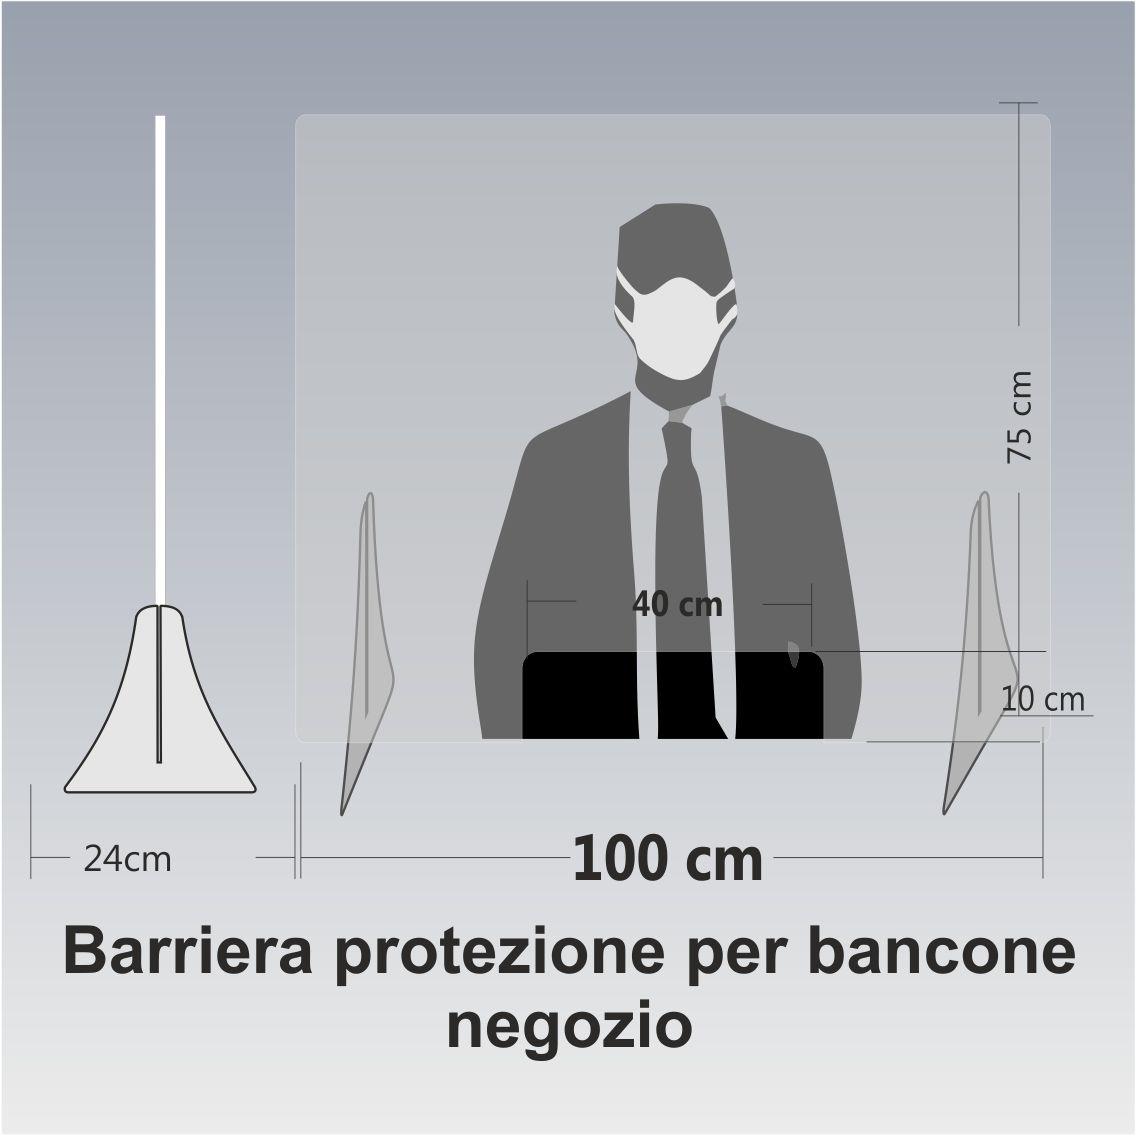 barriera protezione 100 cm